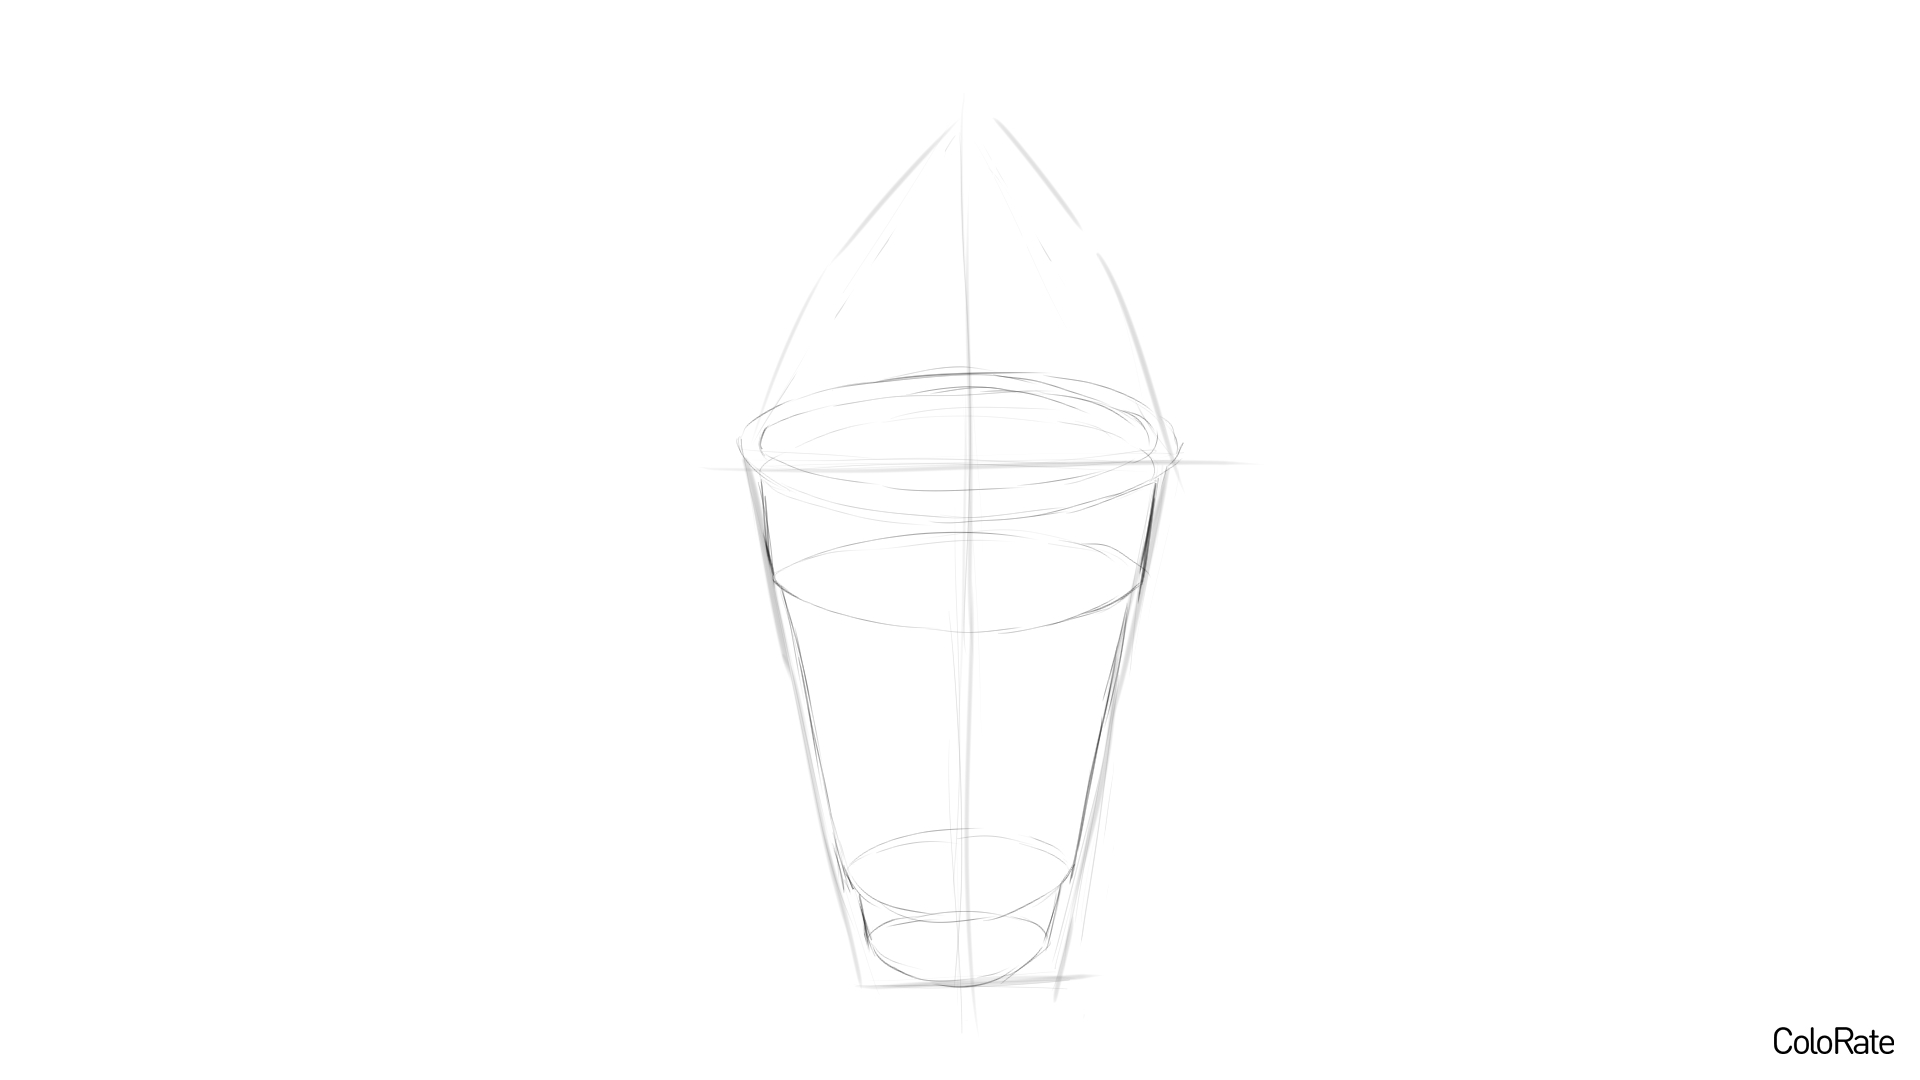 Карандашный рисунок мороженого - шаг 2 - набросок стаканчика